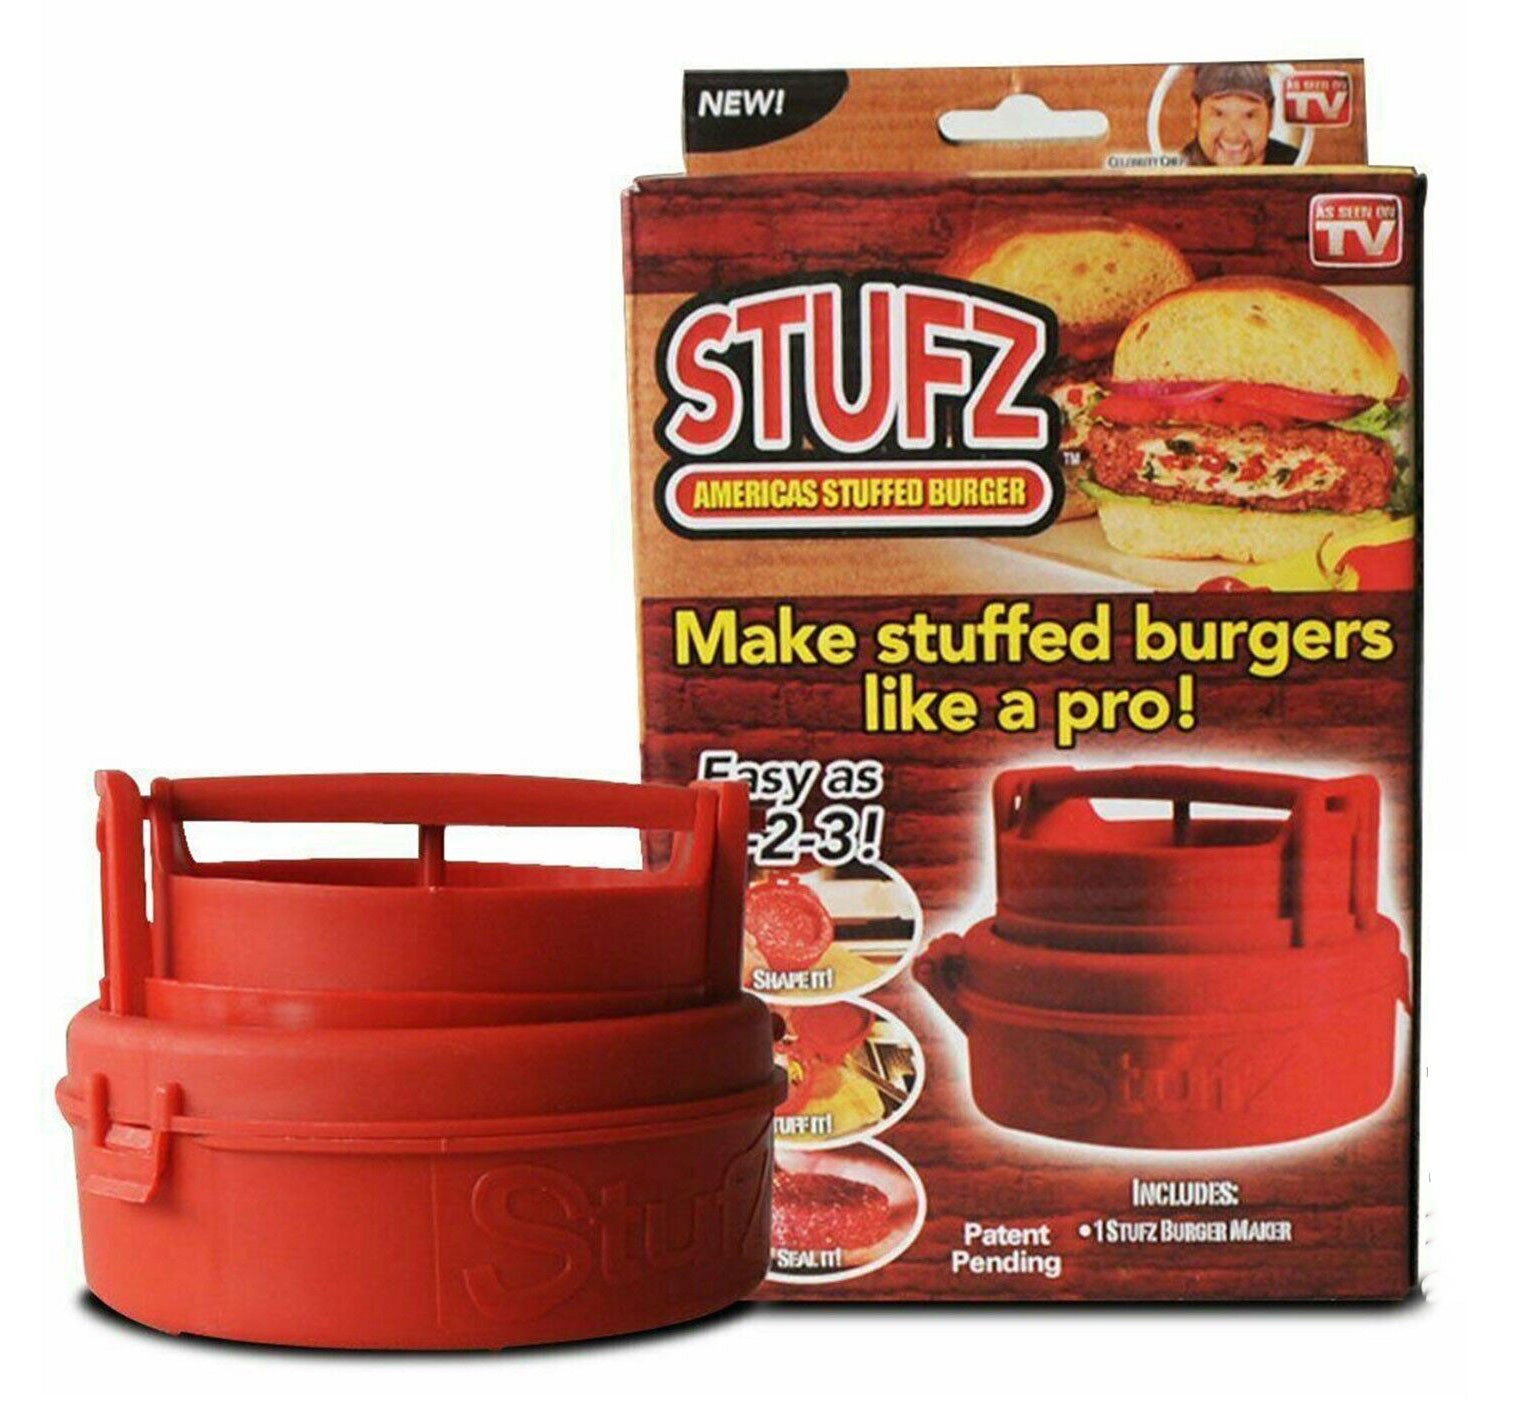 STUFZ Americas Stuffed Burger